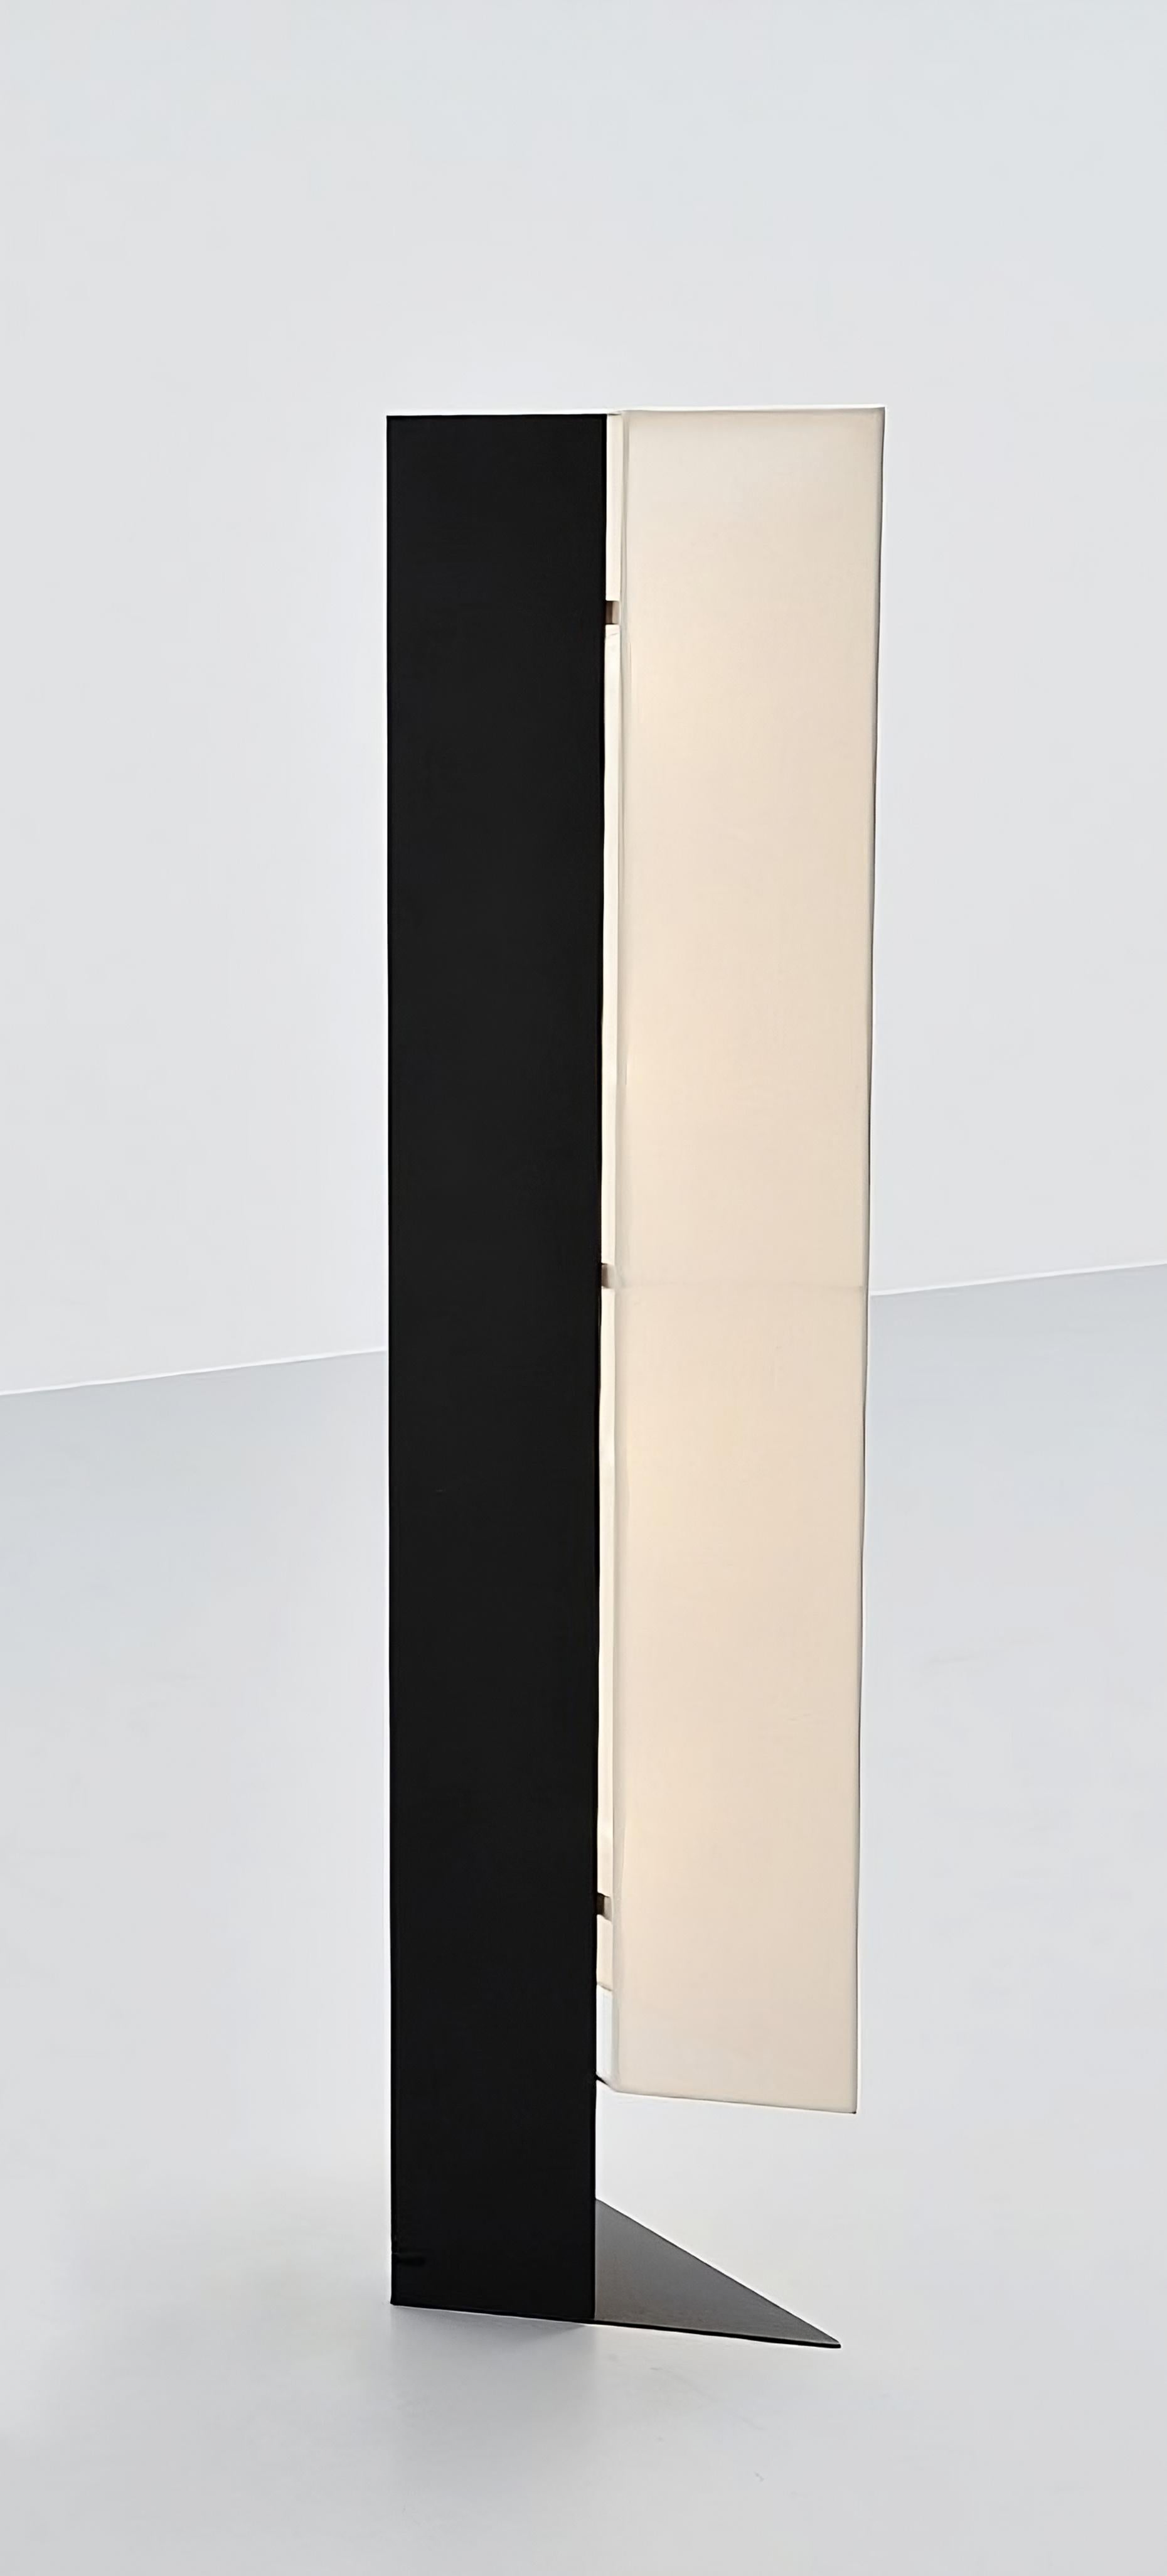 La lampe Accademia, conçue par Cini Boeri en 1978, est une version lampadaire de la populaire lampe de table créée pour Artemide. Cette lampe est un exemple impressionnant de l'approche minimaliste de Boeri en matière de design, avec son esthétique